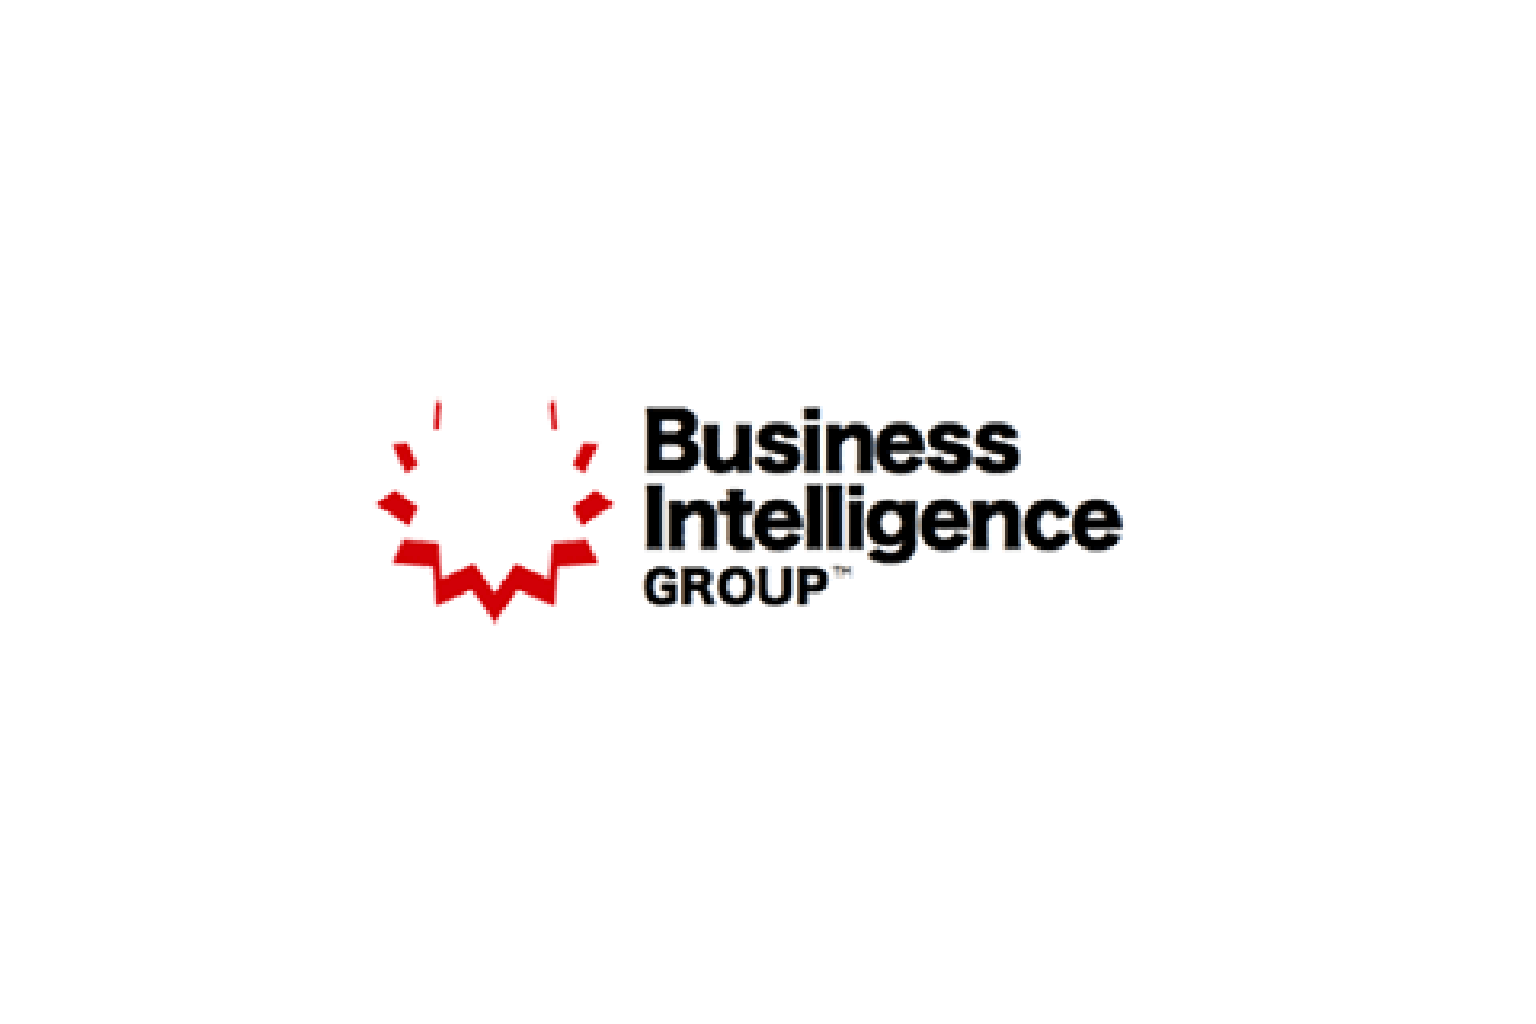 Business Intelligence Group image